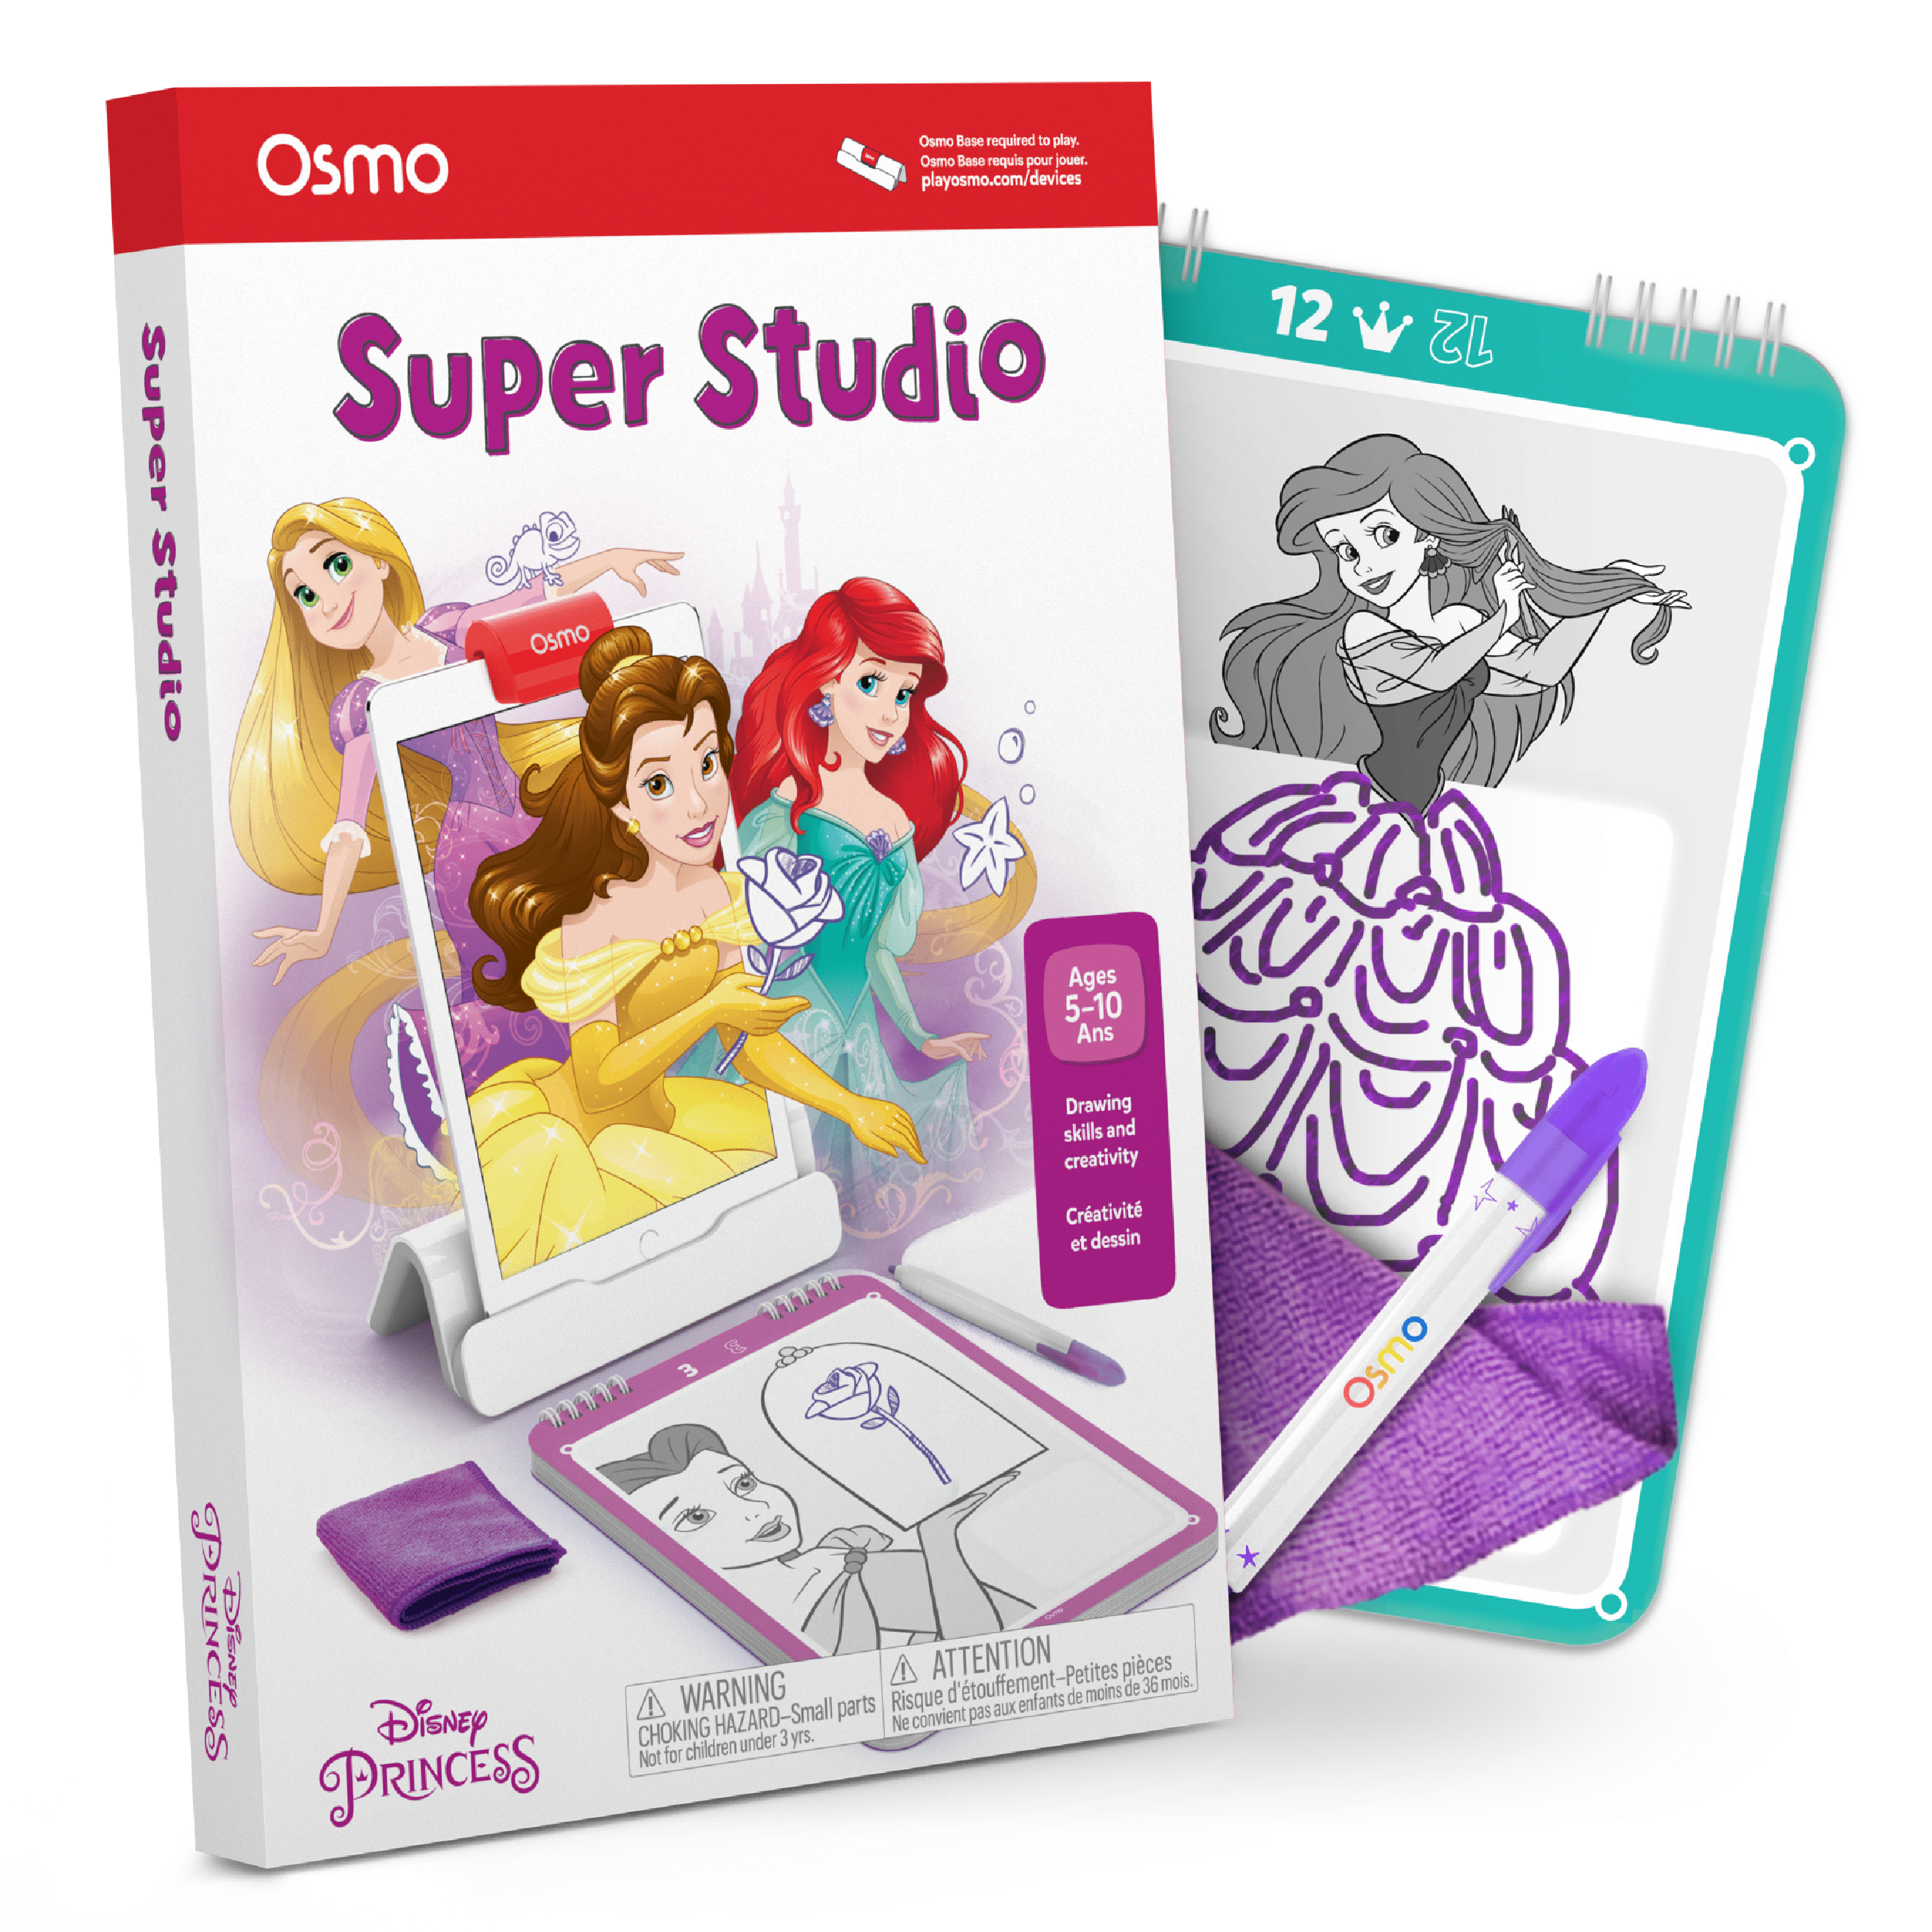 Osmo Super Studio Disney Frozen 2 Starter Kit Art Toys BRAND C11 for sale online 